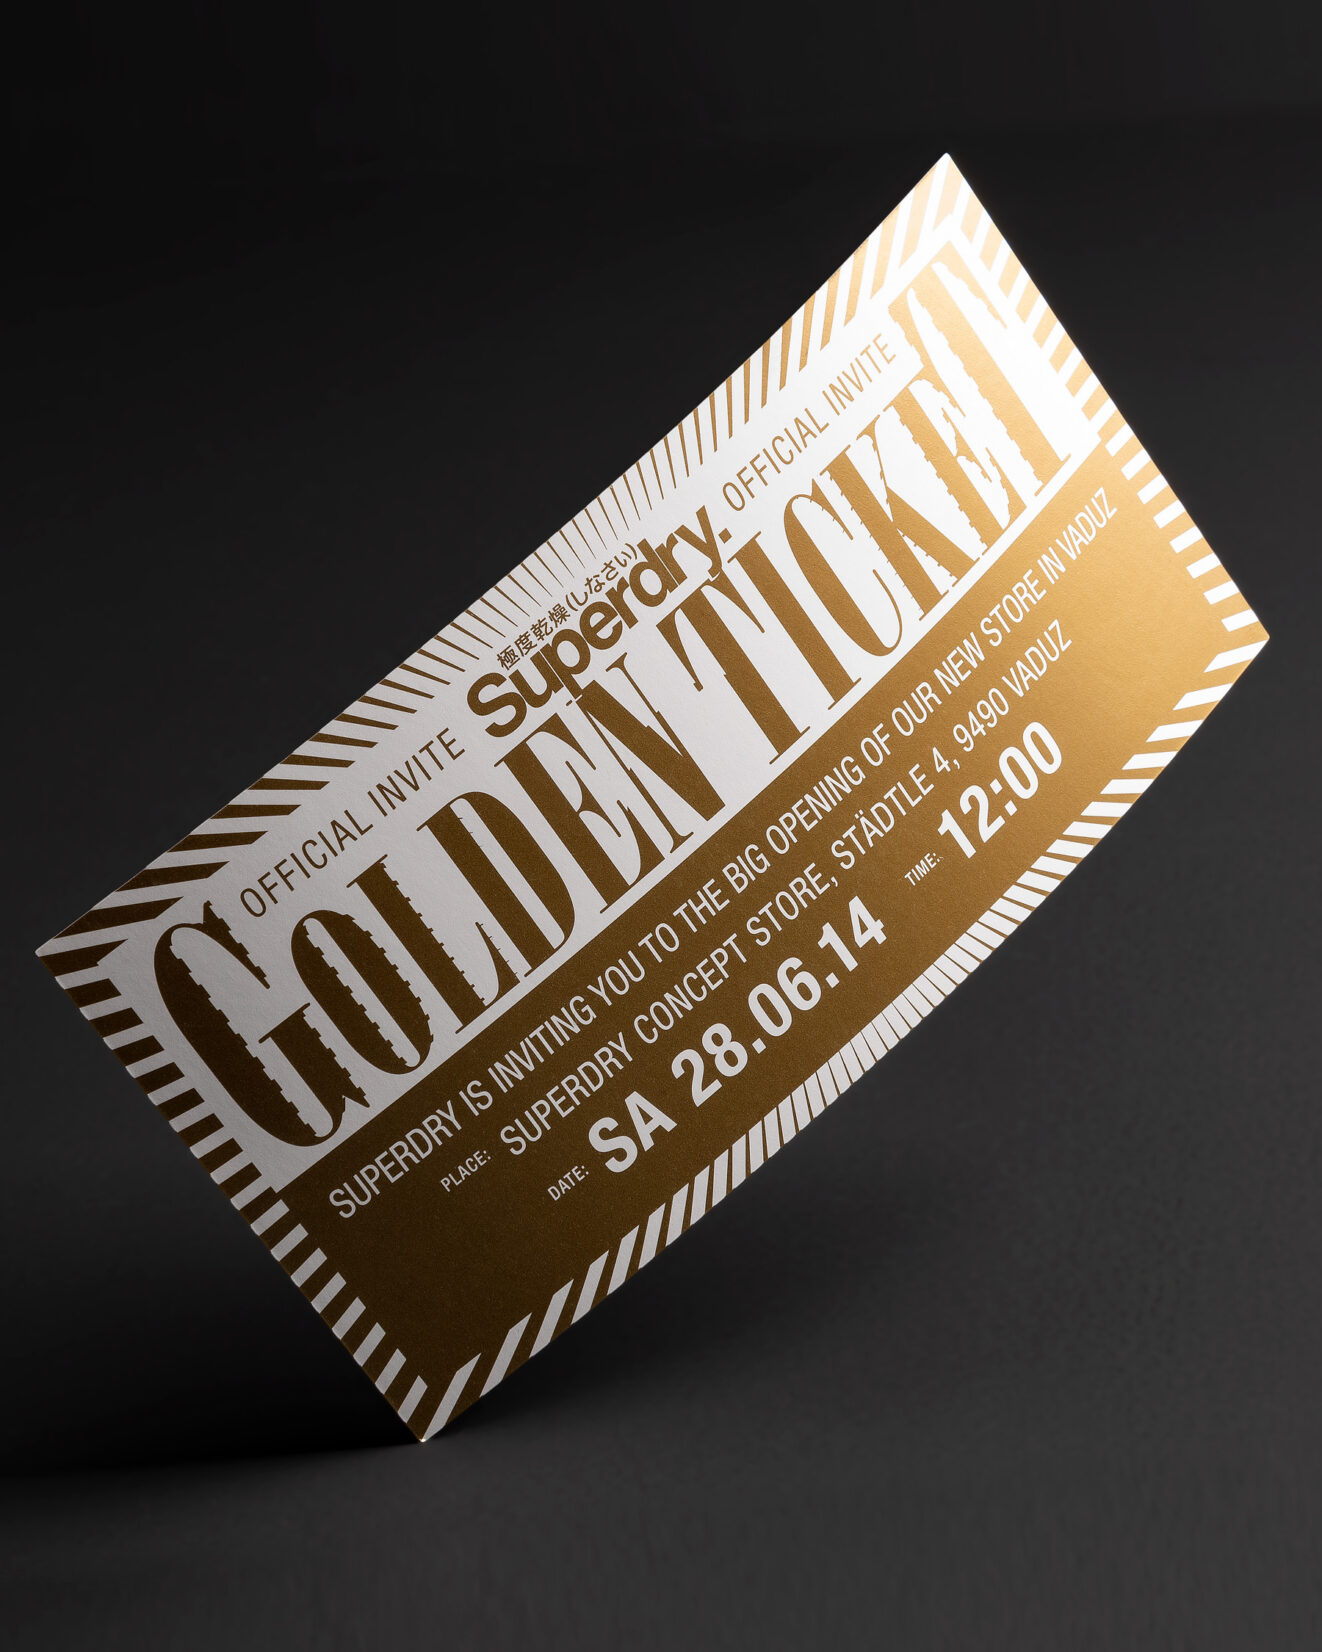 Einladungskarte mit Firmen-Logo komplett mit Metallic-Gold gedruckt im Offset-Druck.